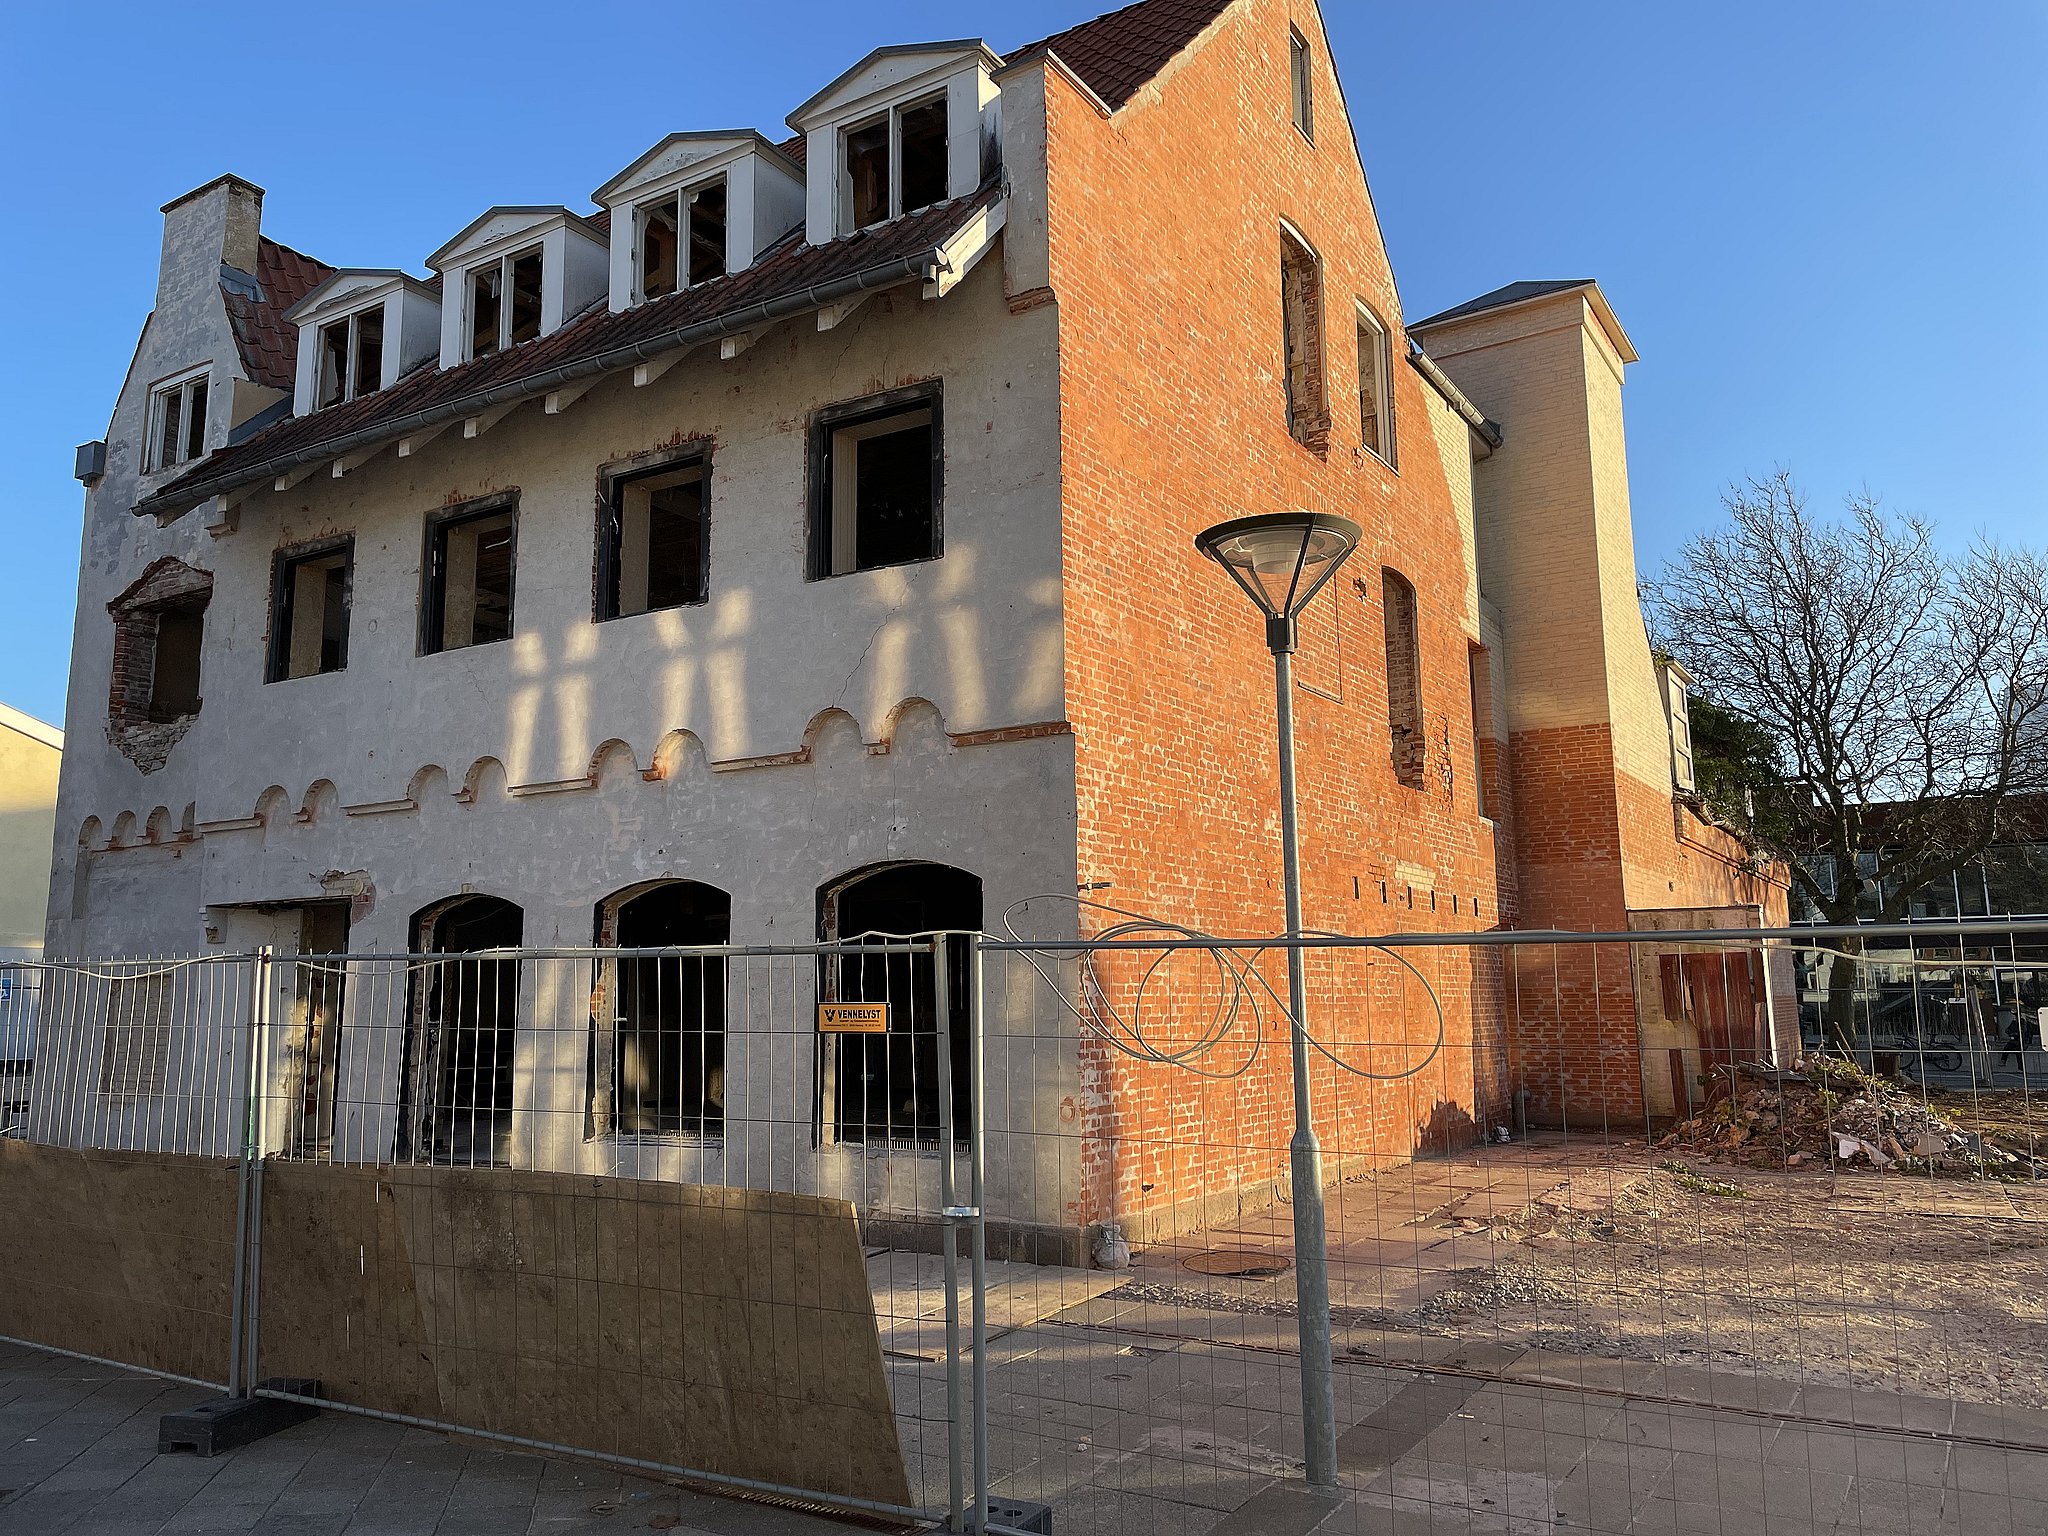 Sådan så bygningen, der tidligere havde huset Messing Jens ud lige inden den endelige nedrivning fandt sted 6. januar.